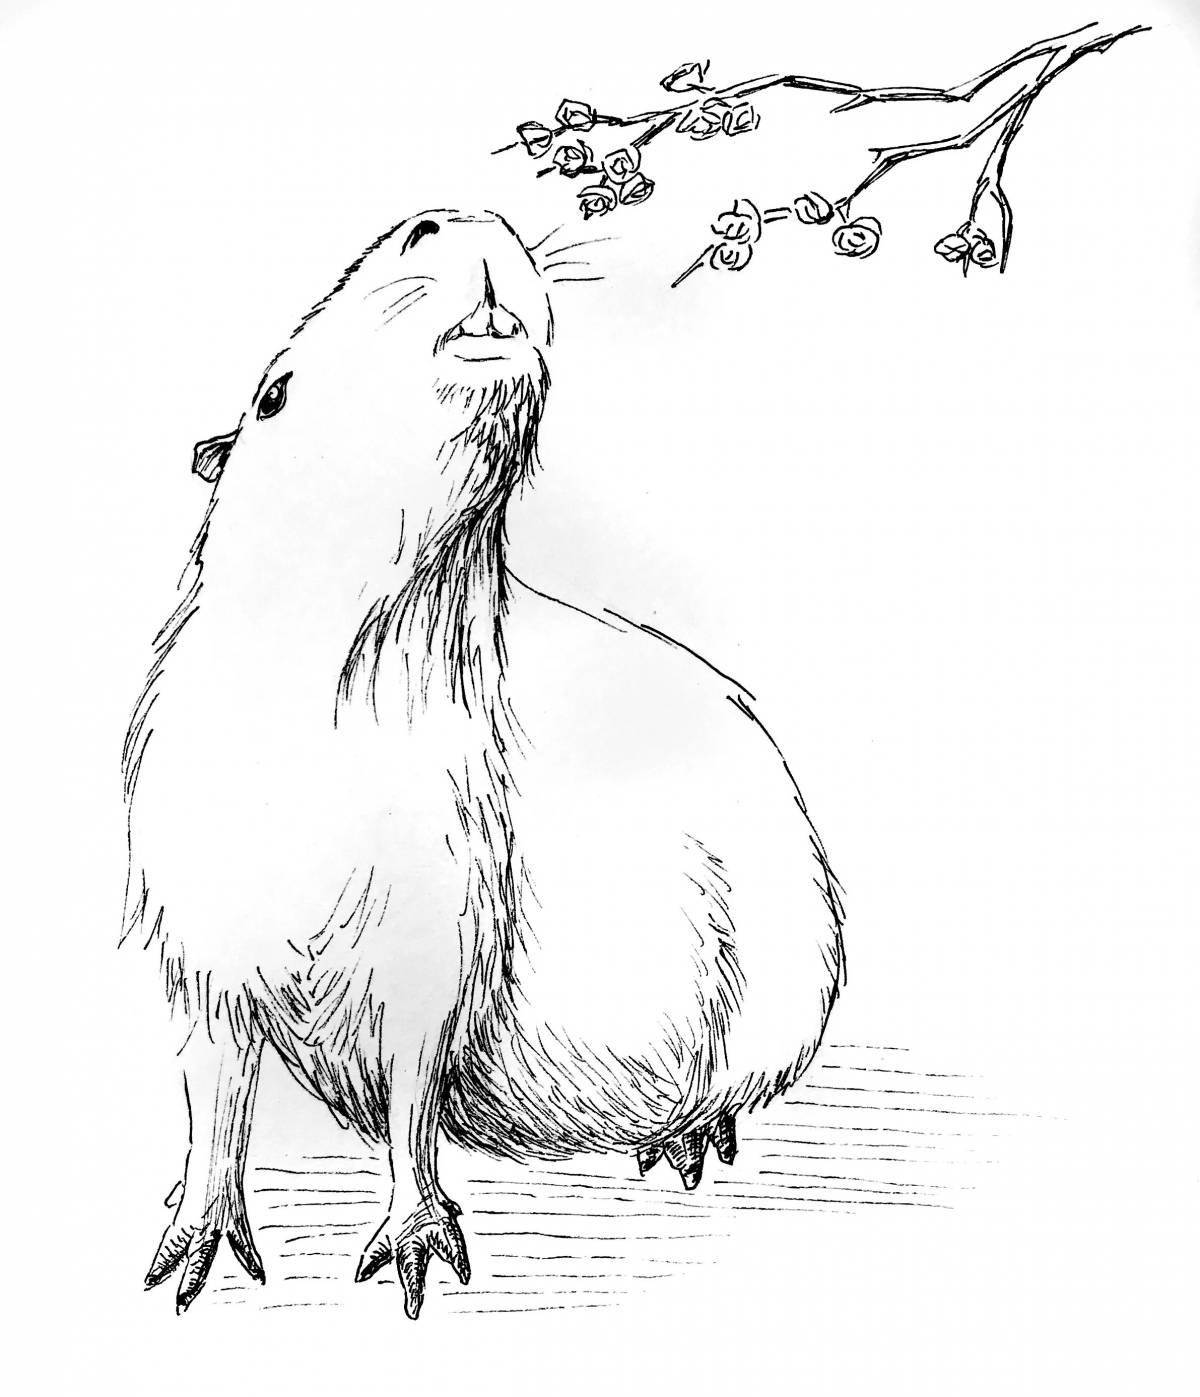 Creative capybara coloring book for kids